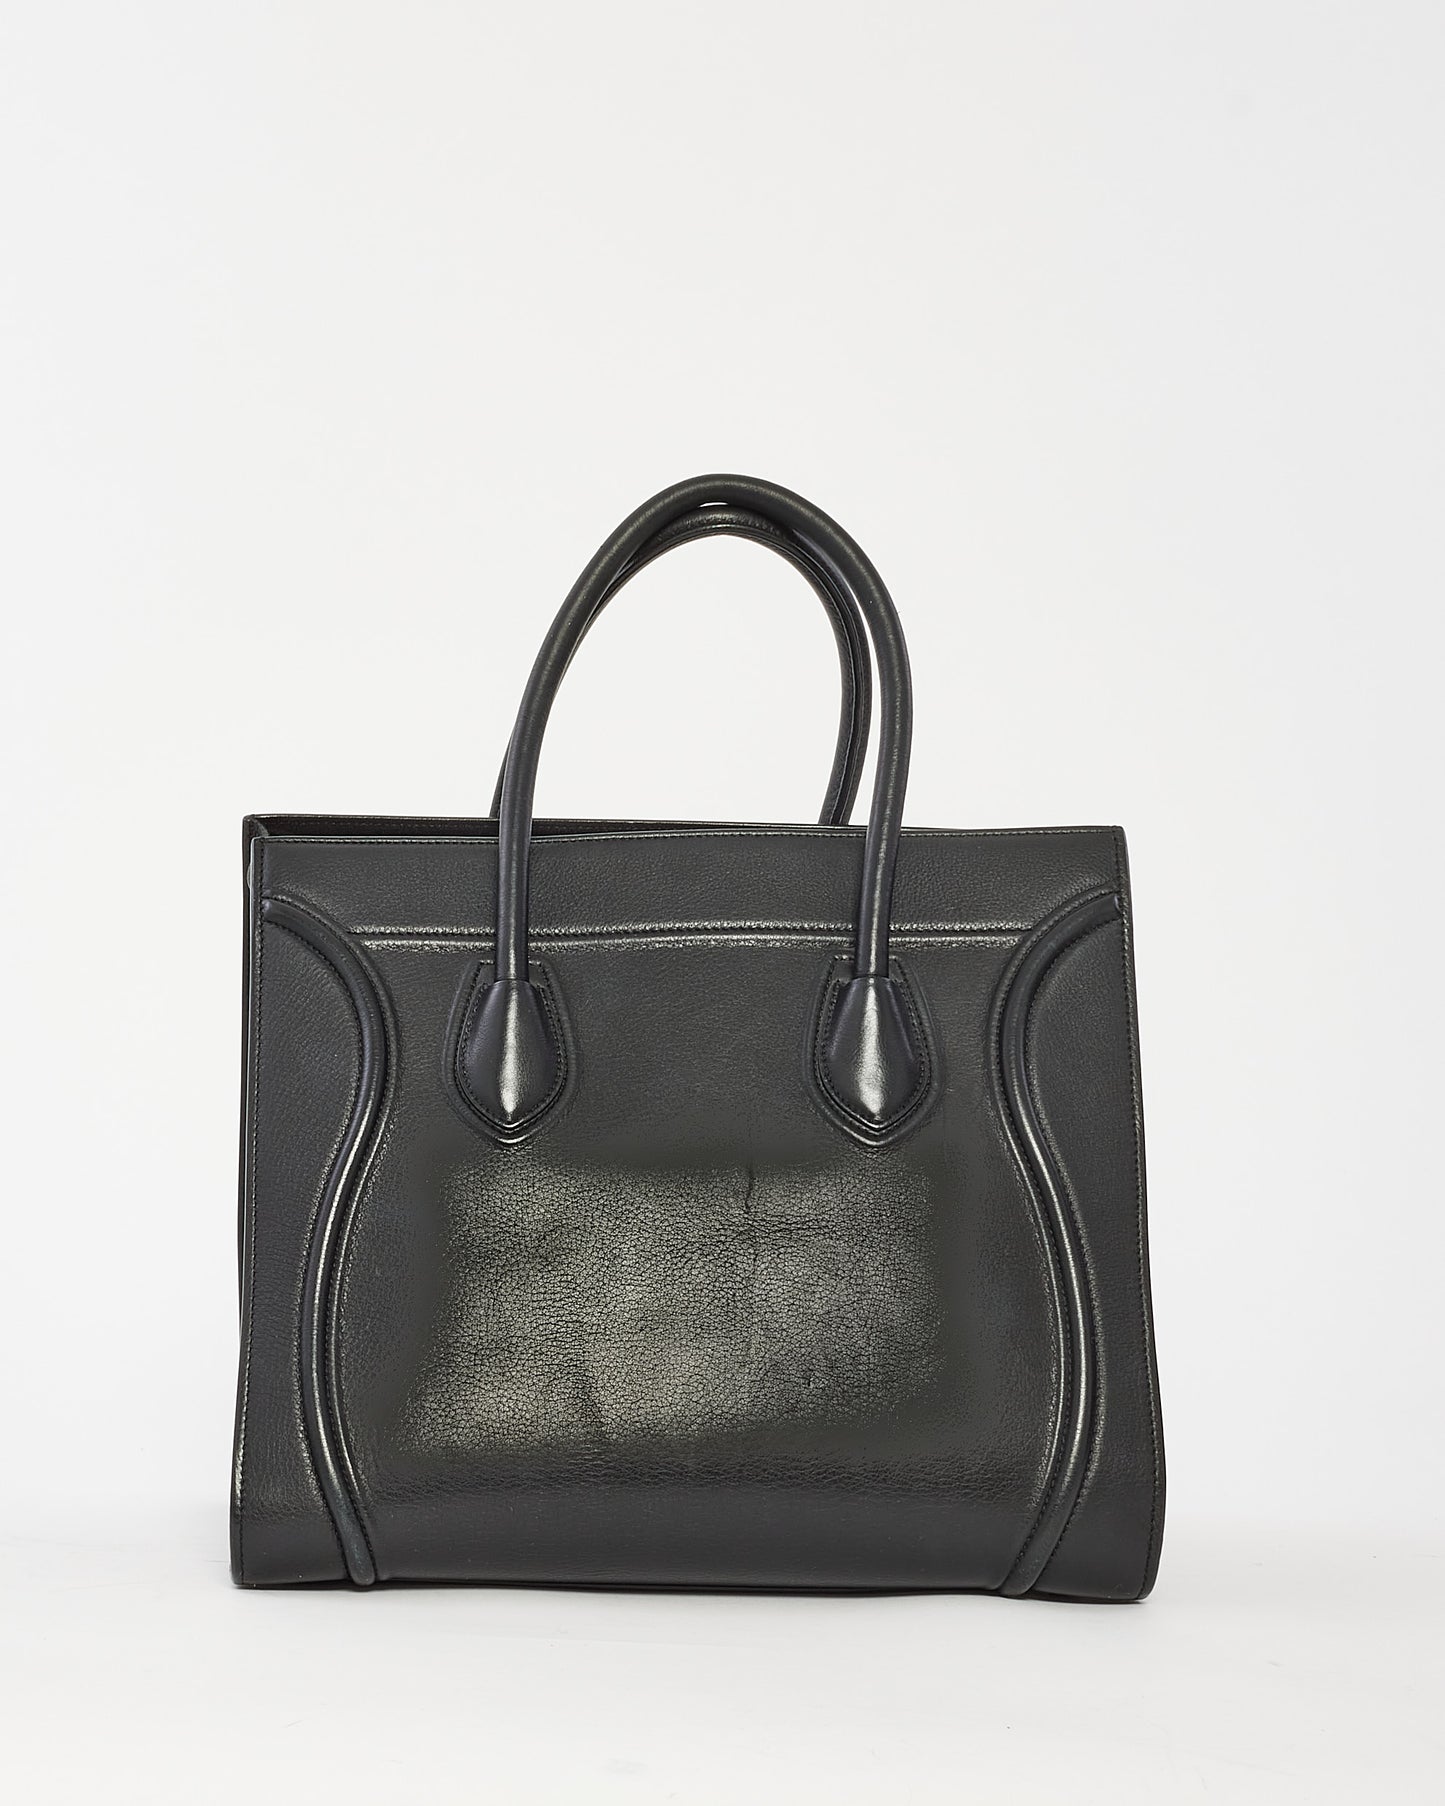 Celine Black Leather Phantom Luggage Medium Tote Bag